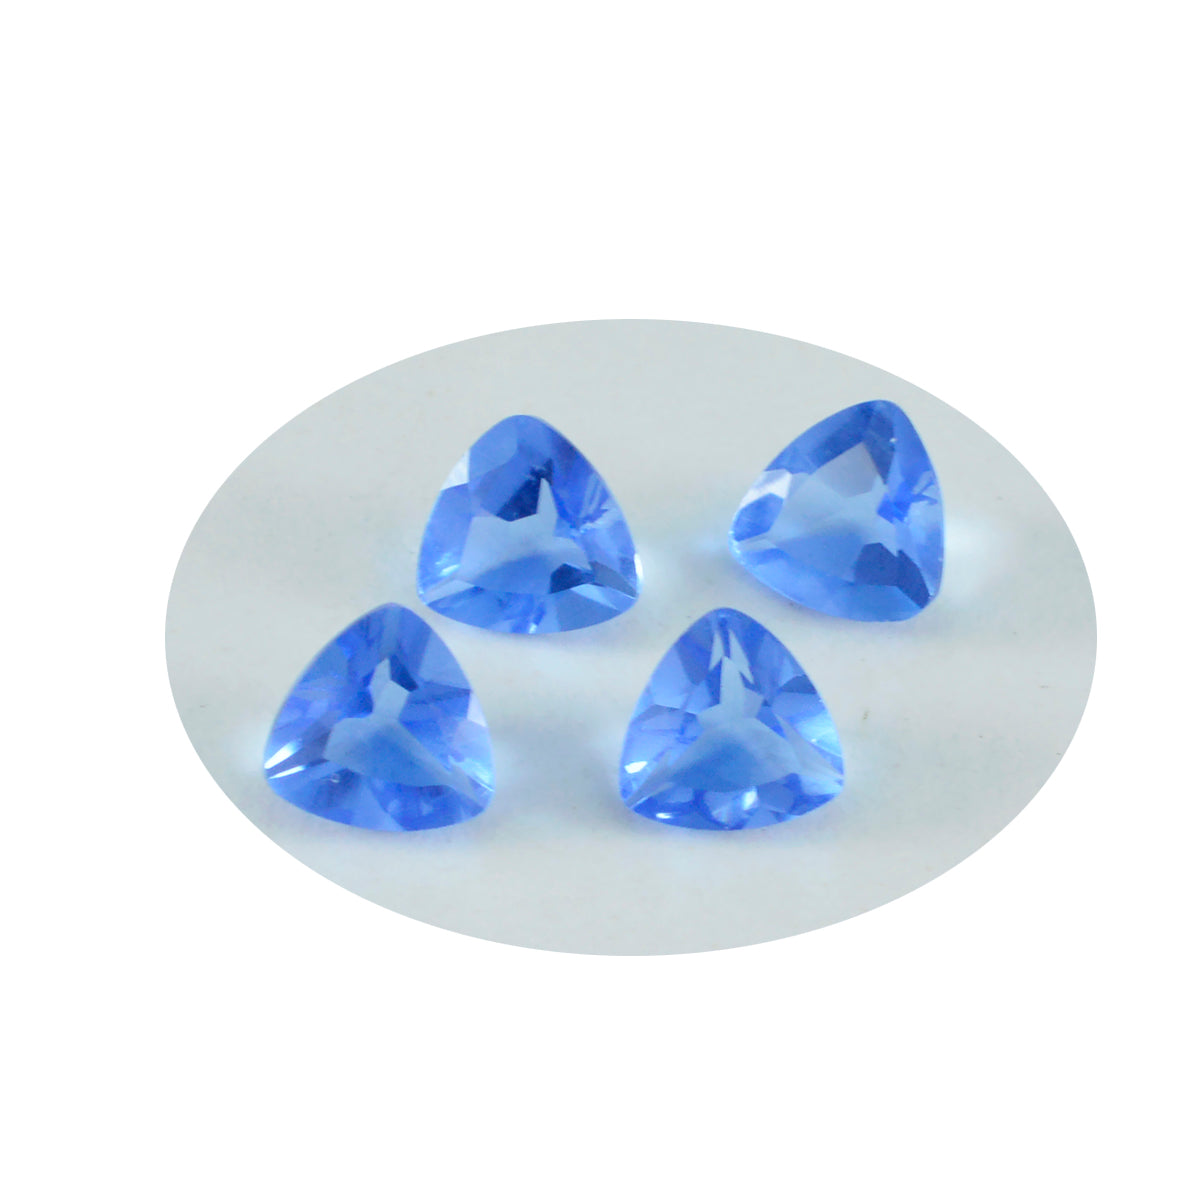 riyogems 1 шт. синий сапфир cz ограненный 9x9 мм драгоценный камень в форме триллиона сладкий качественный драгоценный камень